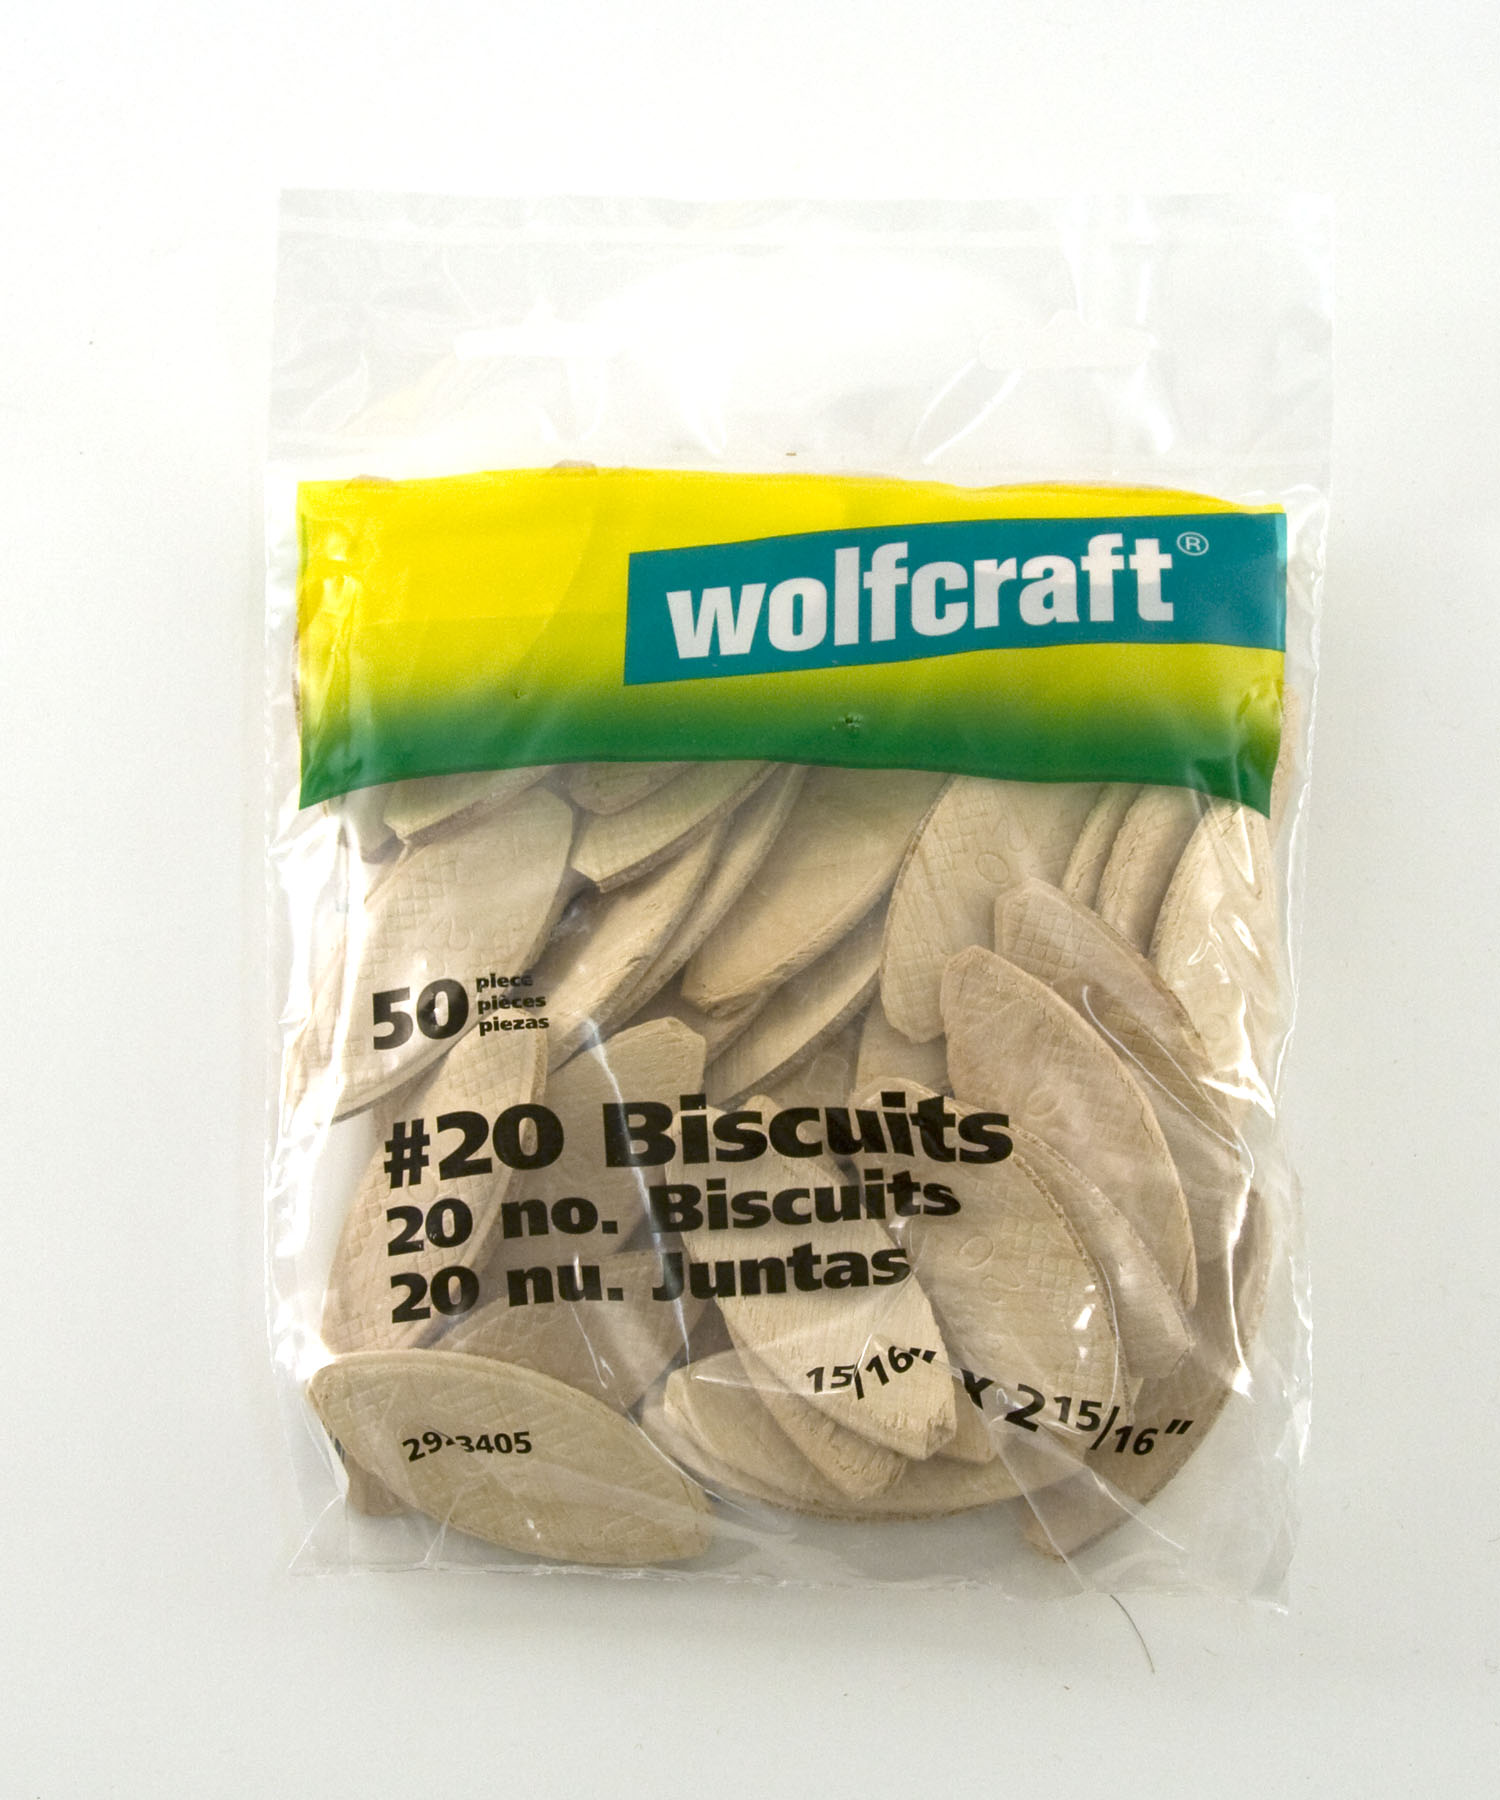 Wolfcraft #20 BISCUITS